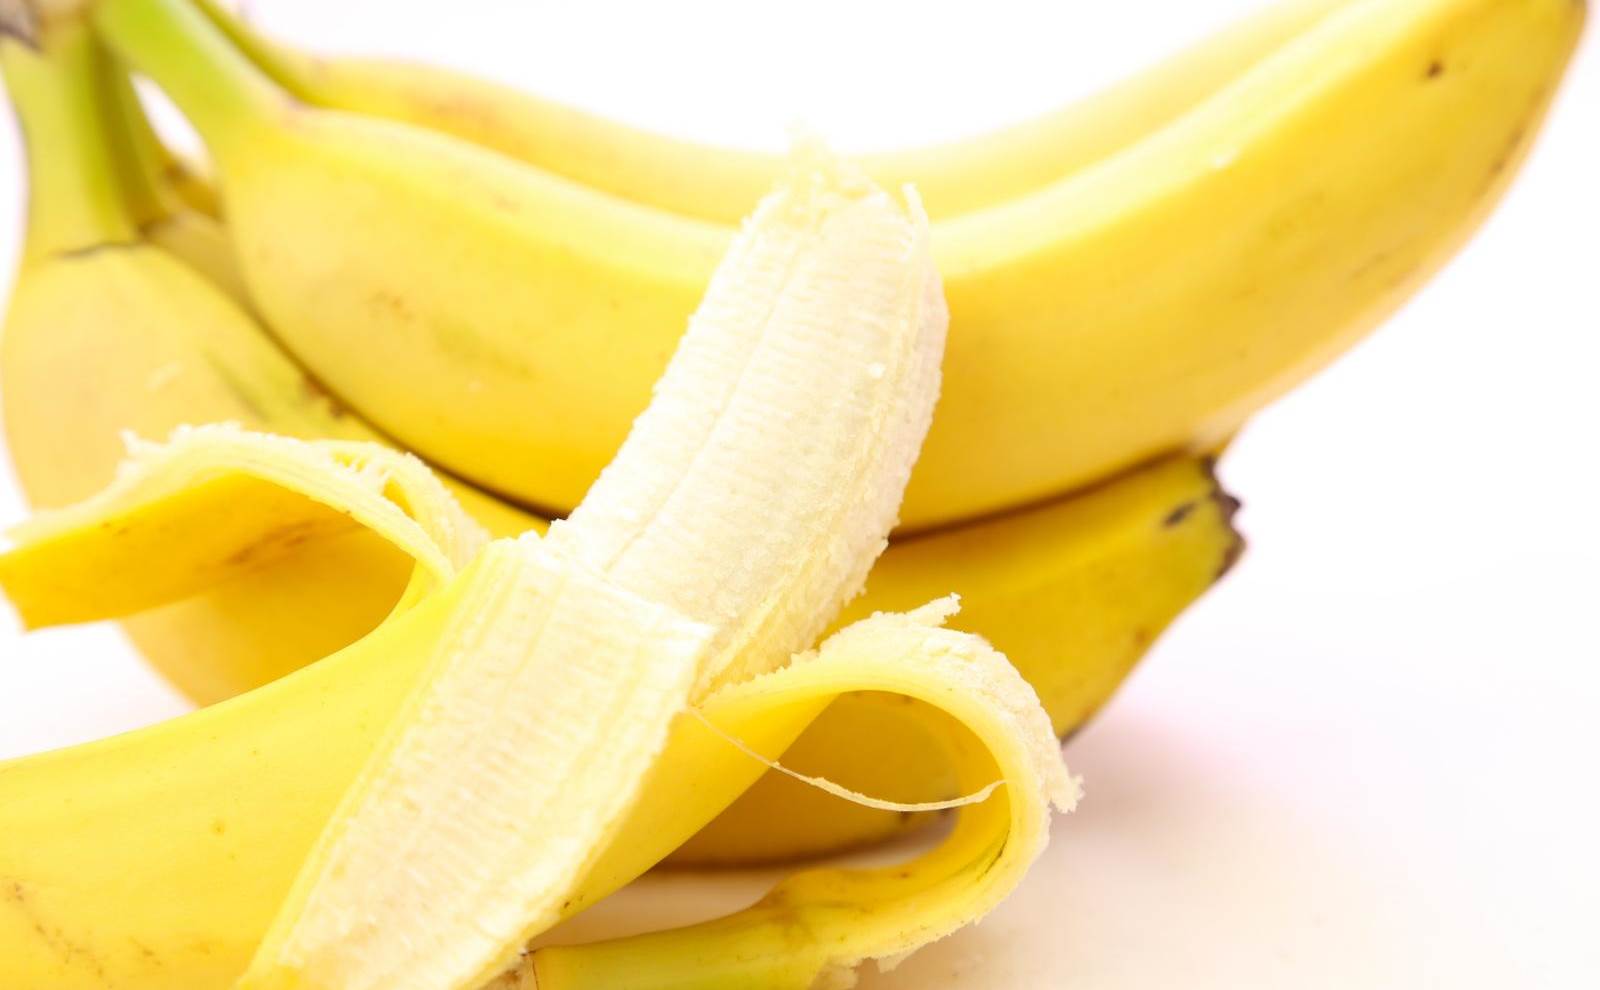 バナナは妊活中にもってこい 効果的な食べ合わせもご紹介します Neen食事栄養情報